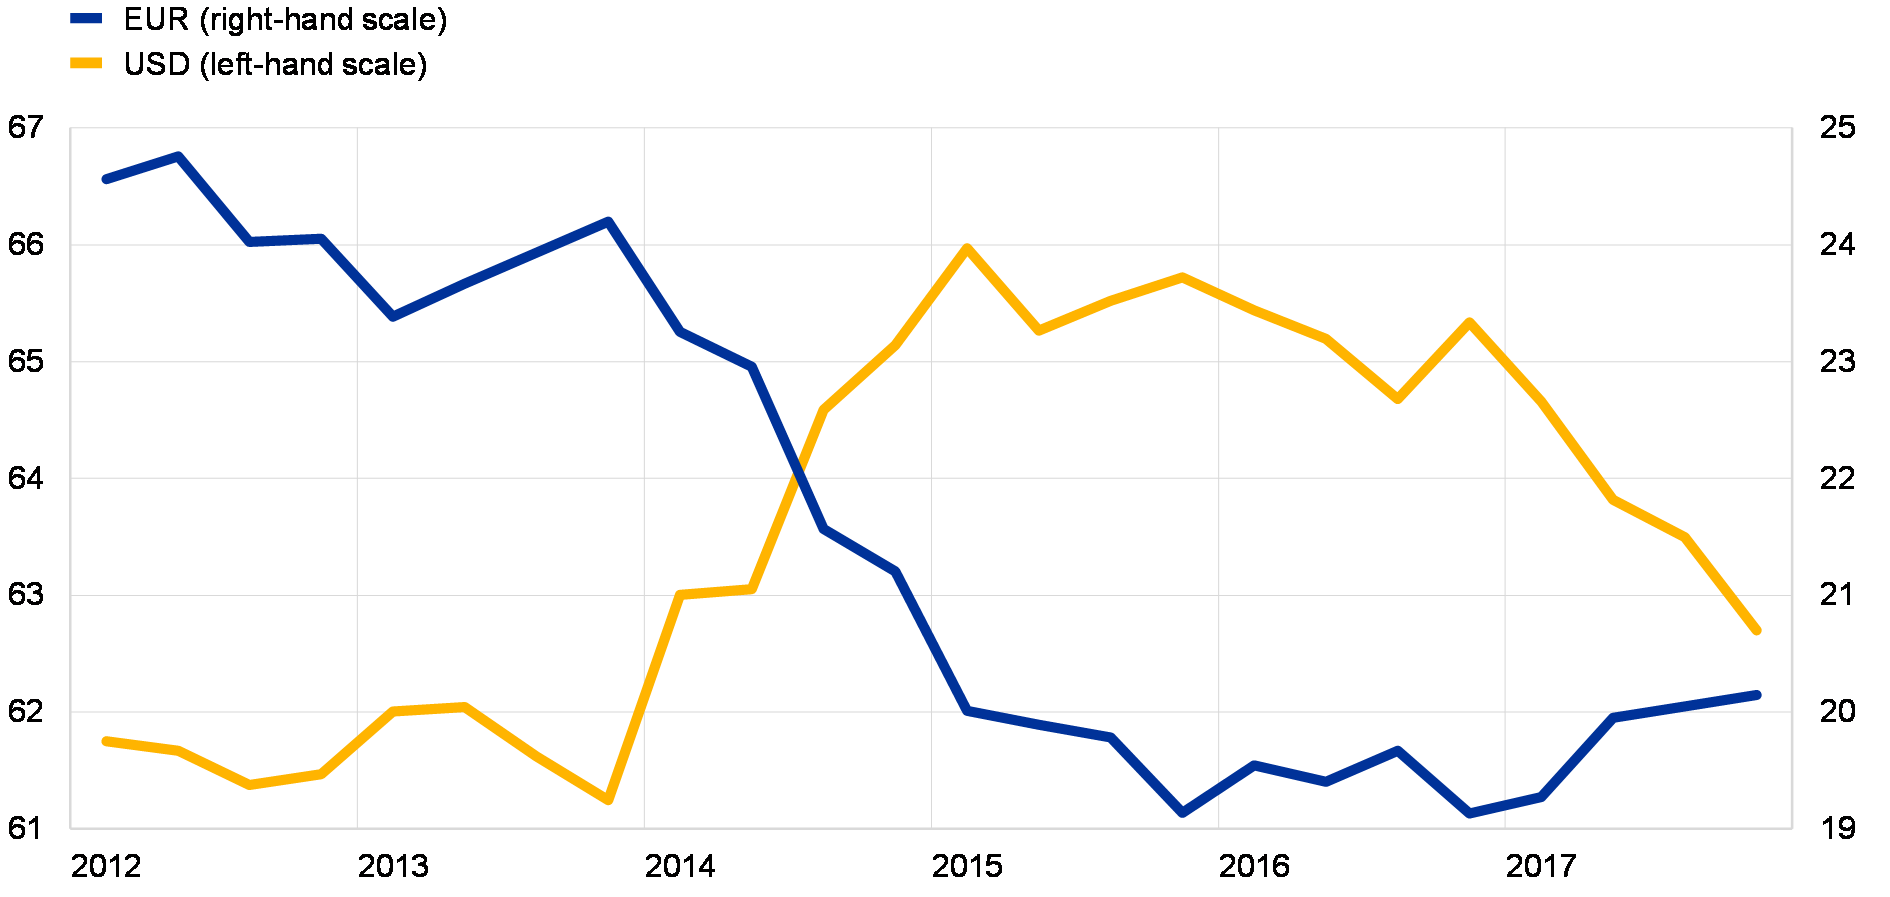 Euro Exchange Rate Chart 2017